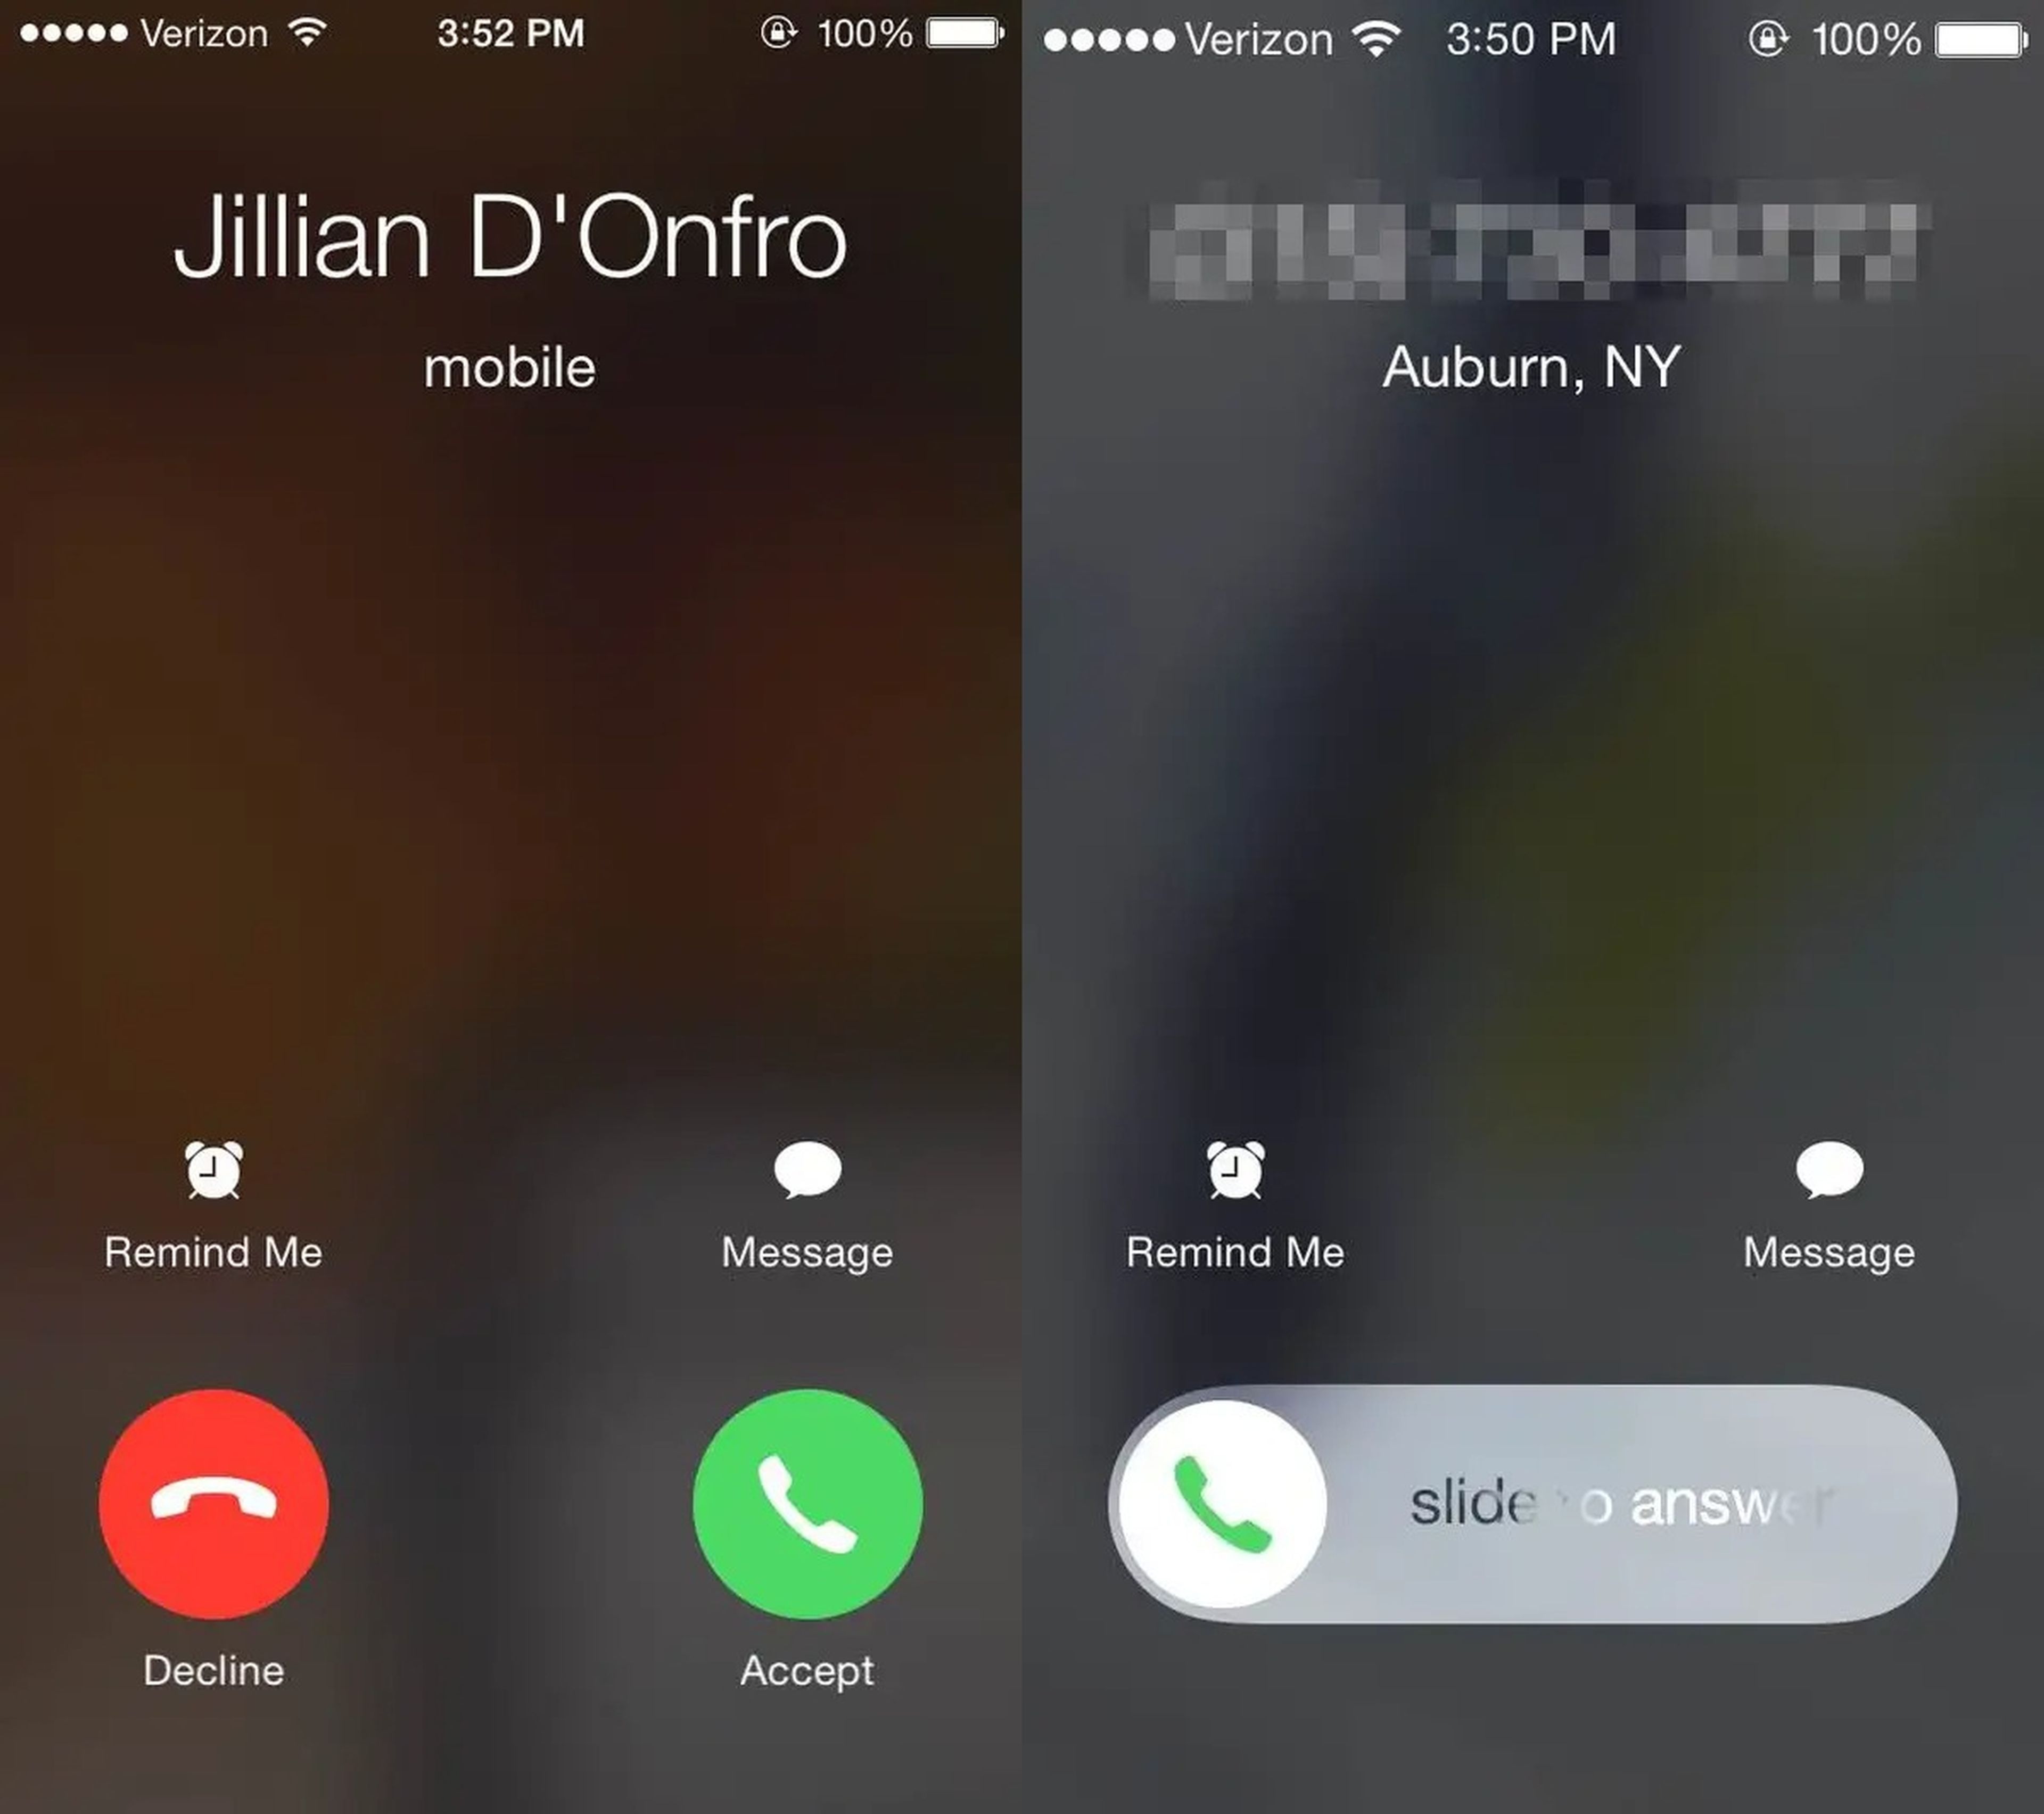 ¿Por que el iPhone no muestra siempre la opción de rechazar llamada?